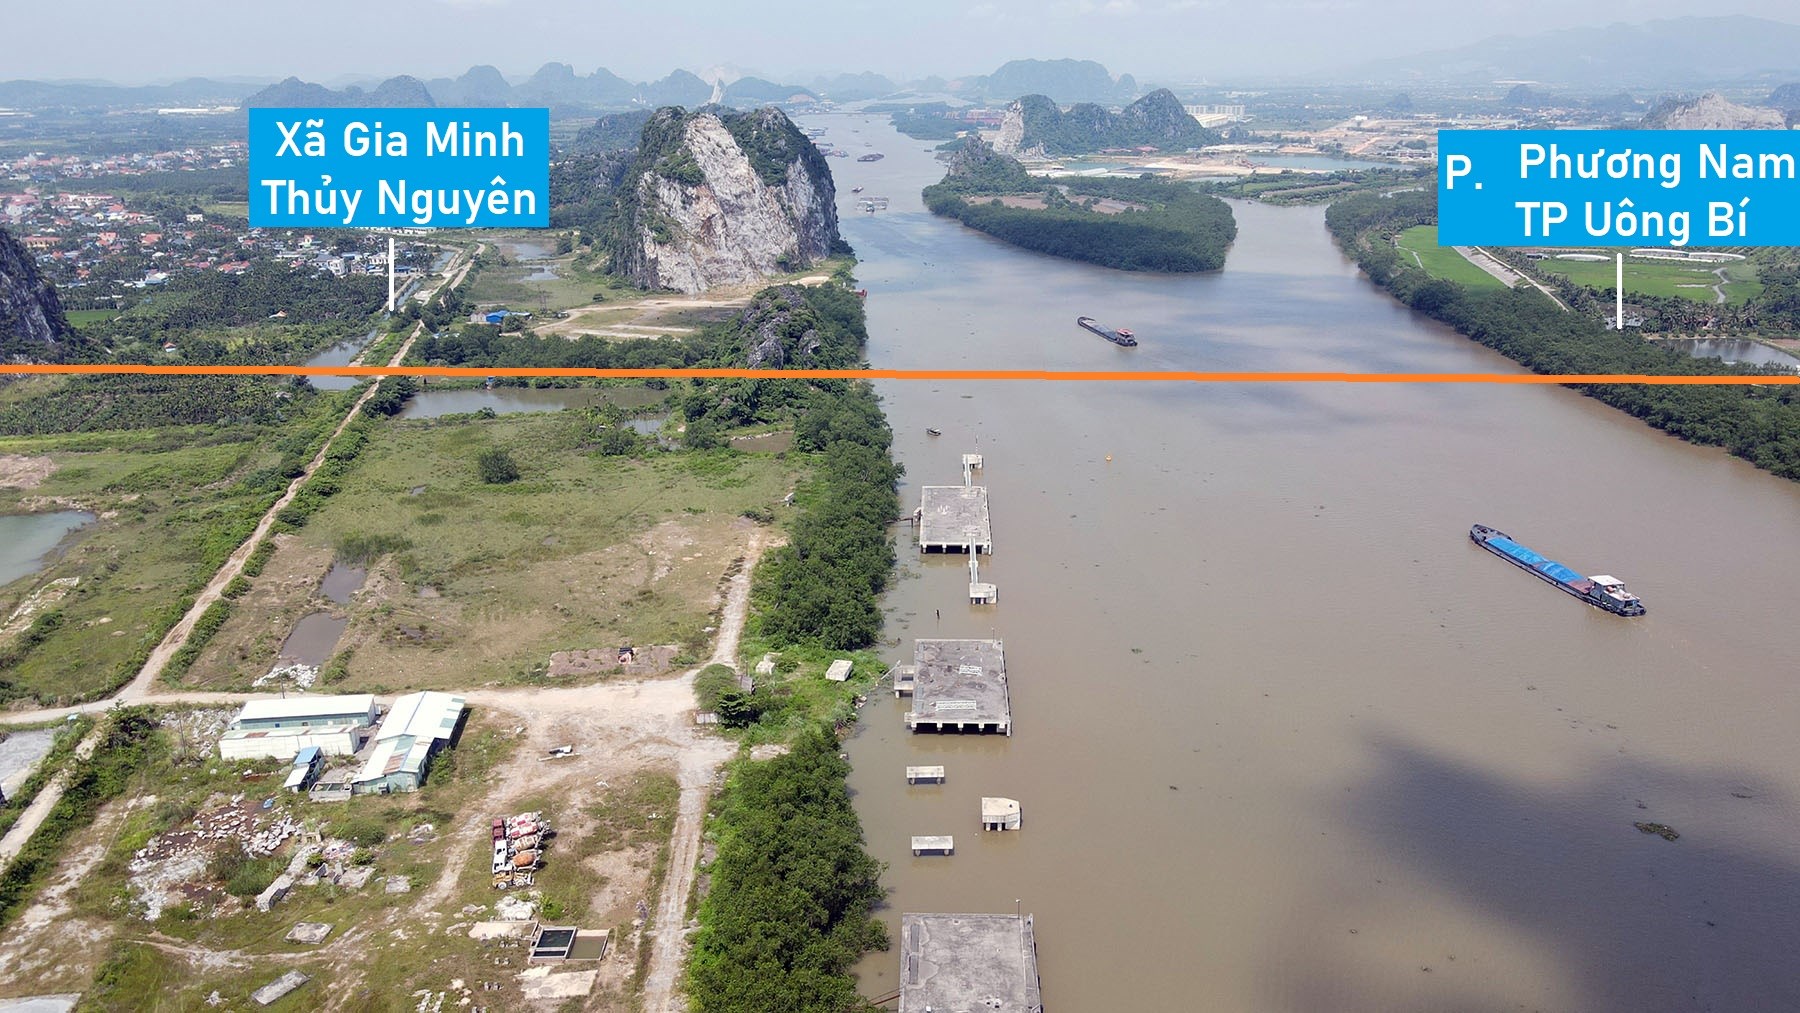 Toàn cảnh vị trí dự kiến quy hoạch cầu vượt sông Đá Bạch nối Thủy Nguyên, Hải Phòng với Uông Bí, Quảng Ninh